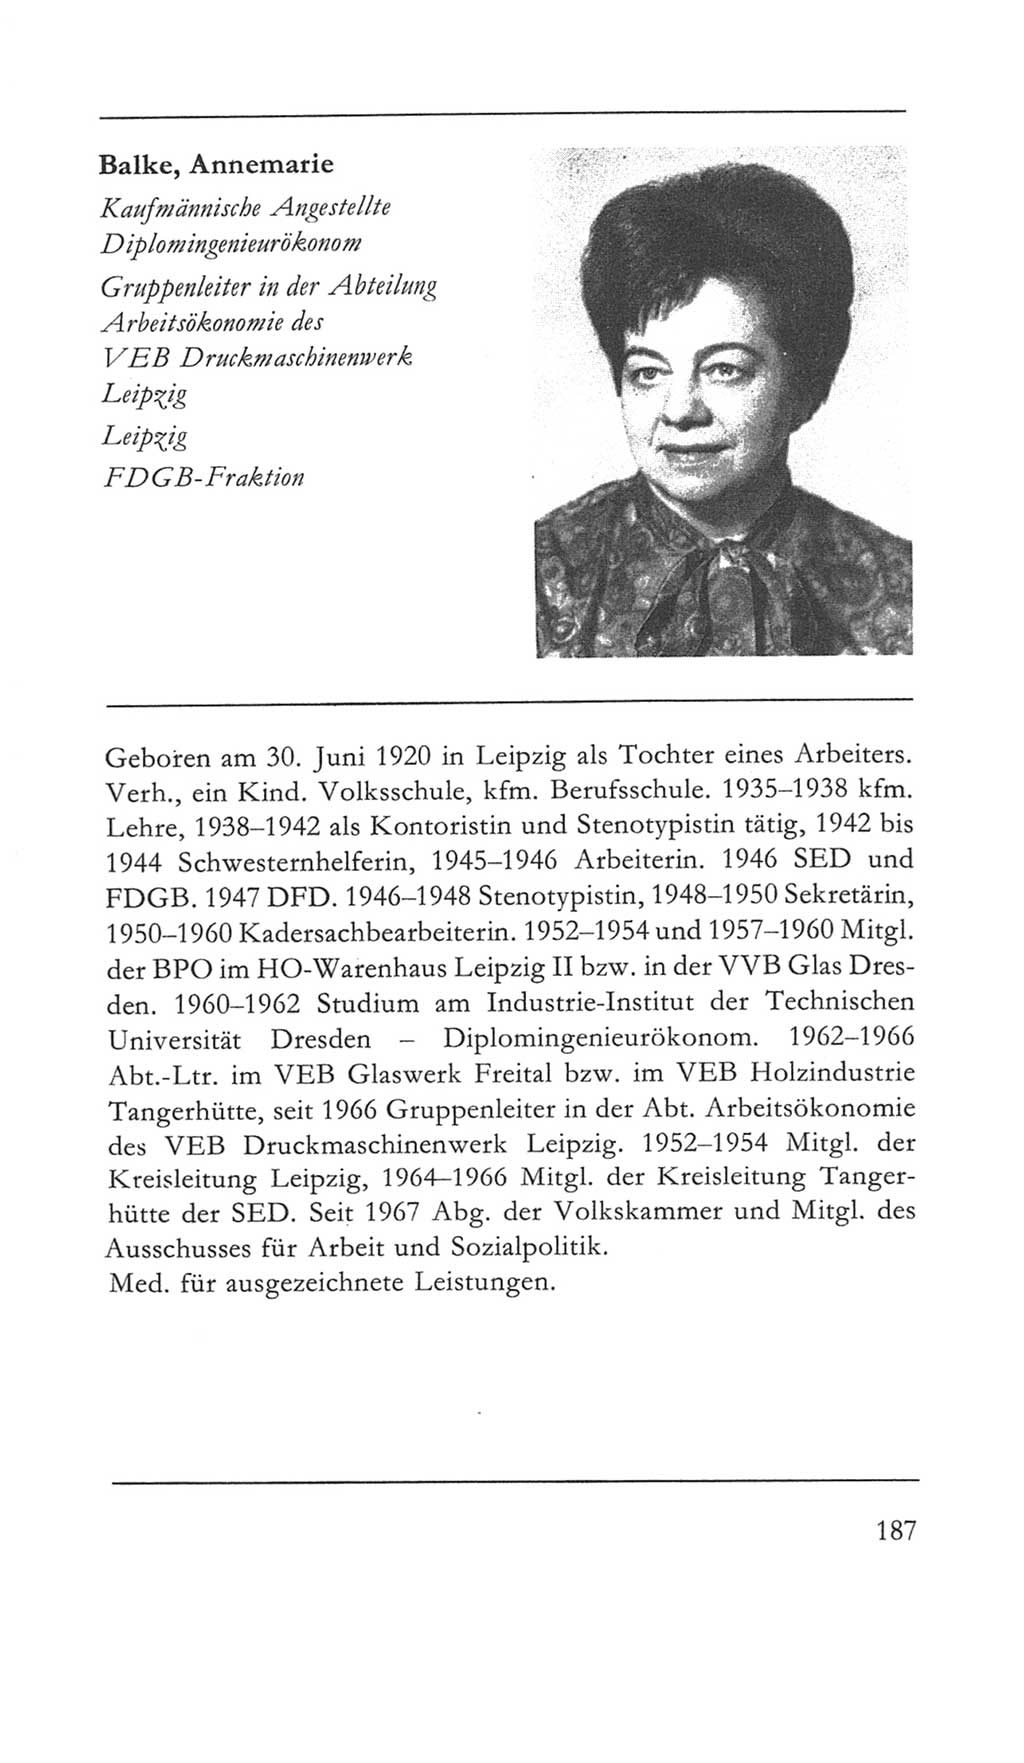 Volkskammer (VK) der Deutschen Demokratischen Republik (DDR) 5. Wahlperiode 1967-1971, Seite 187 (VK. DDR 5. WP. 1967-1971, S. 187)